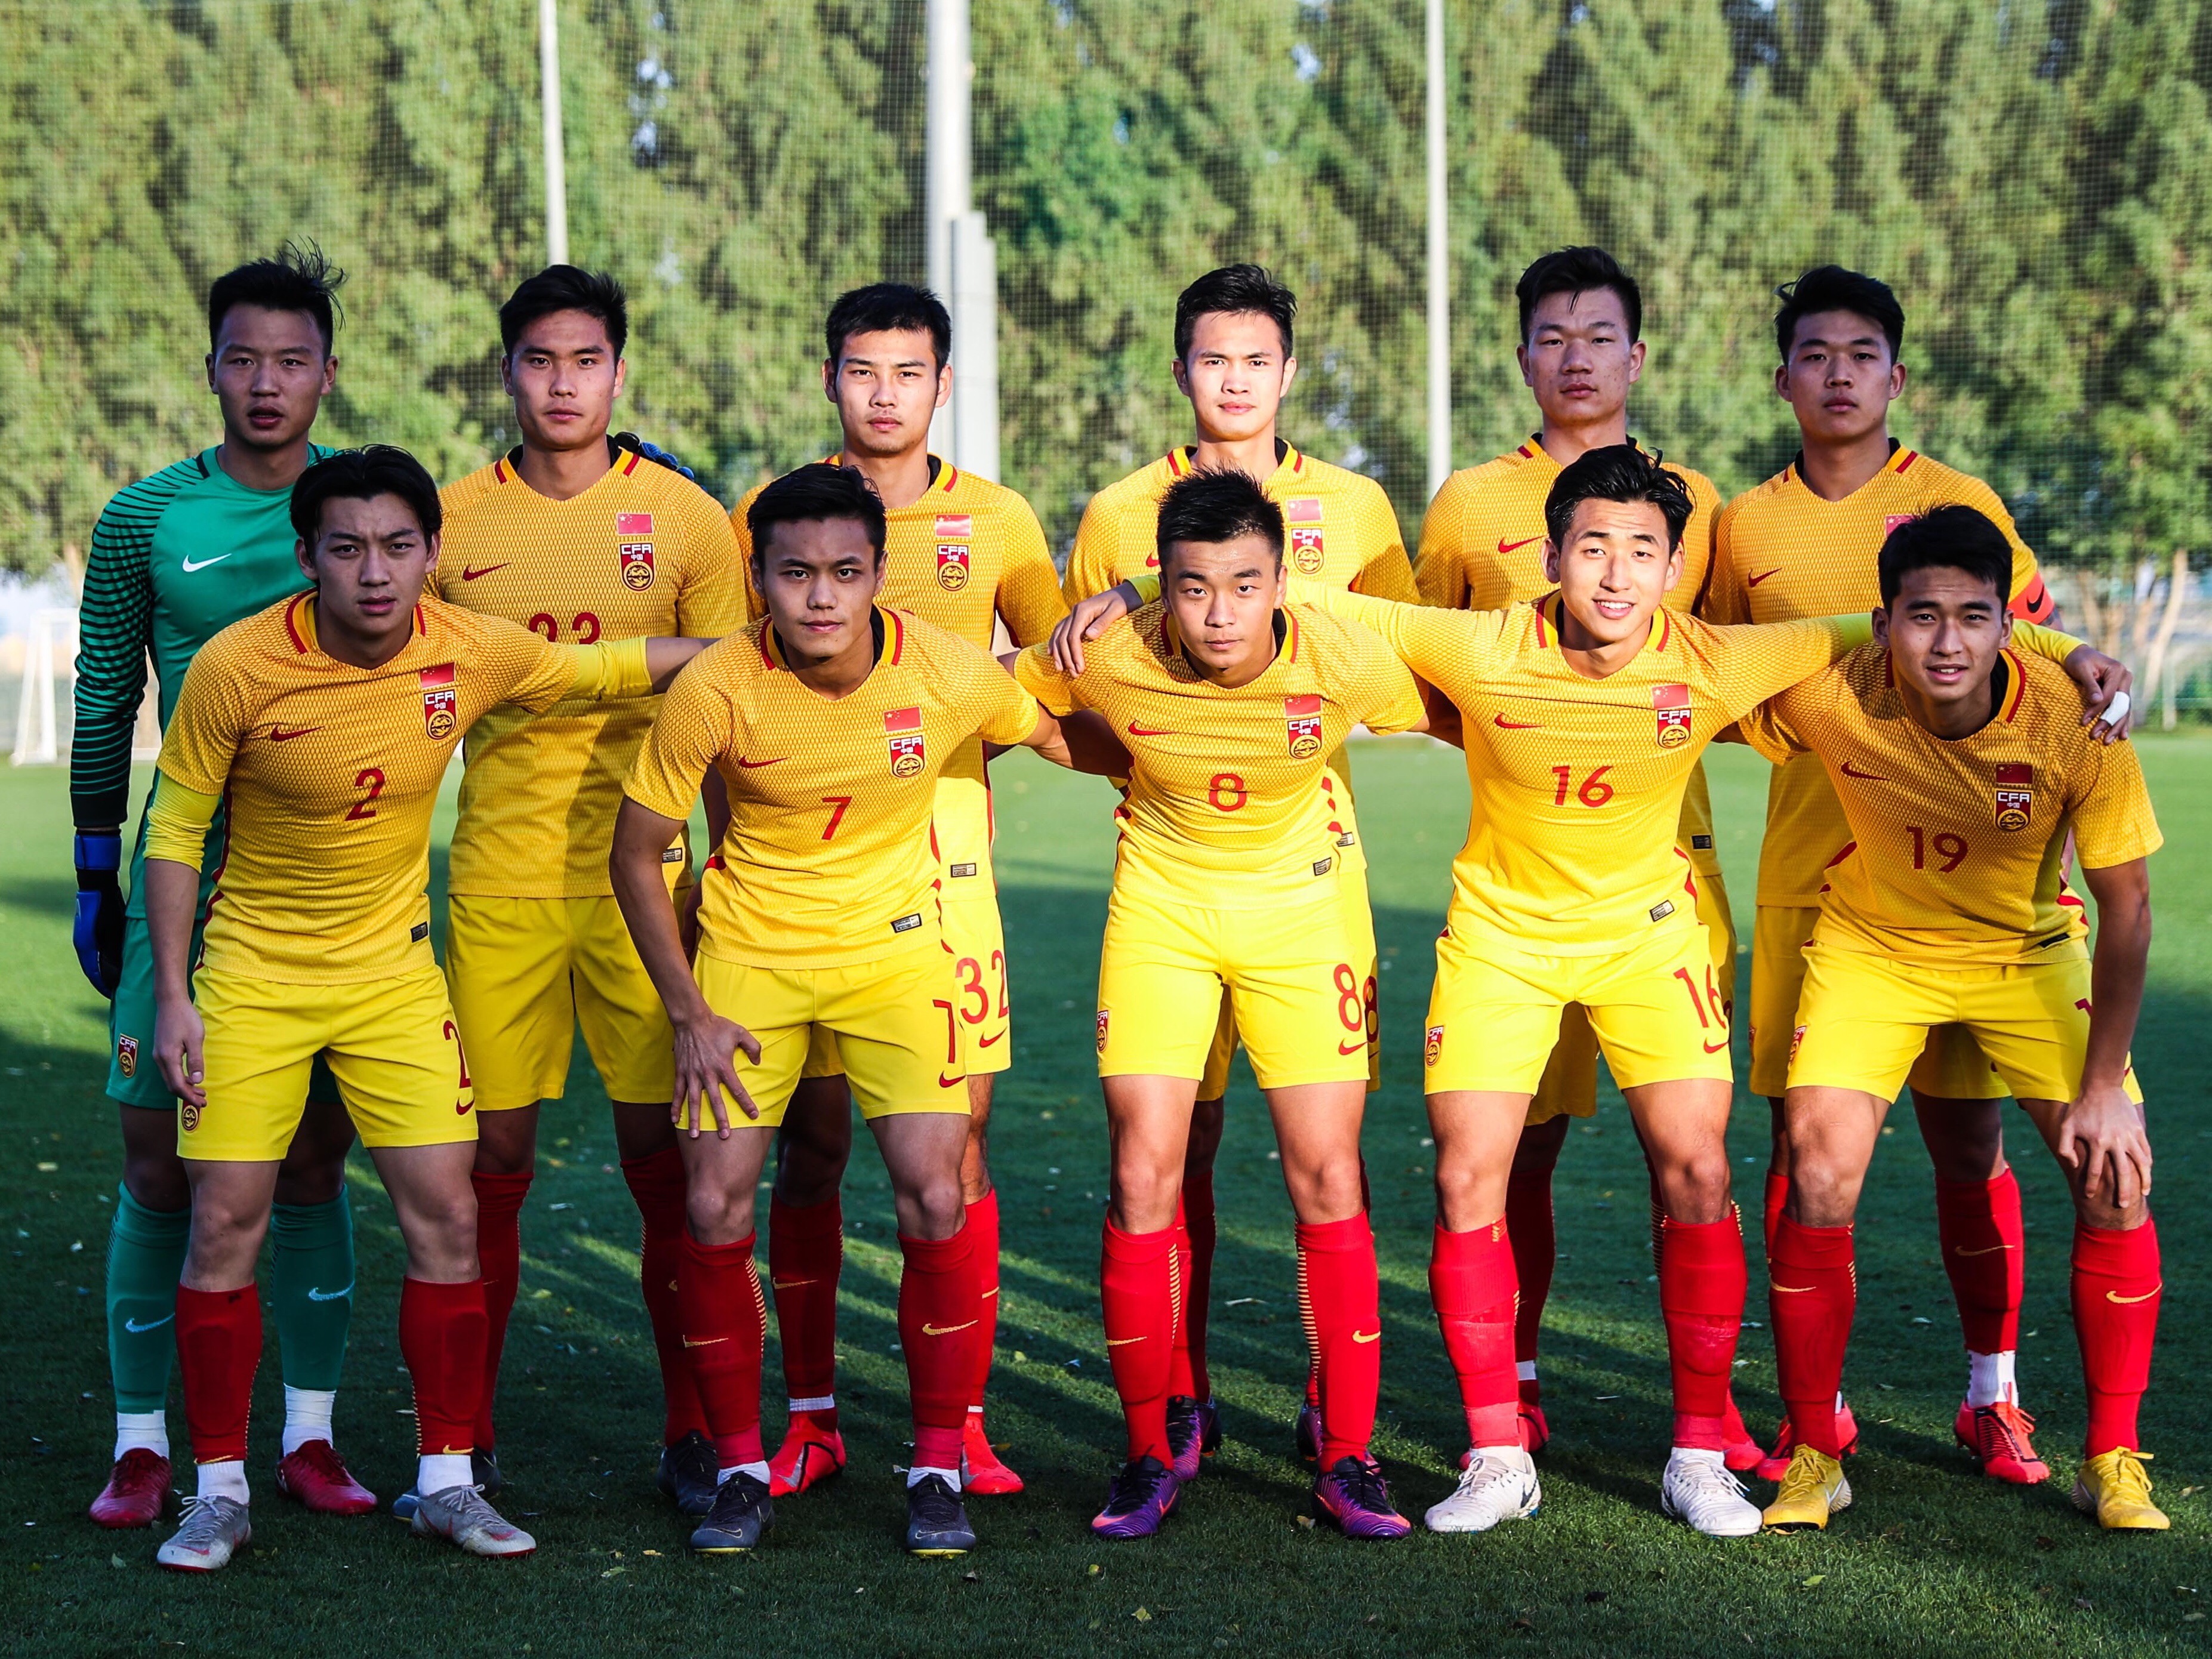 北京时间7月12日,据越南媒体消息,经越南足协确认,中国国奥队将同越南